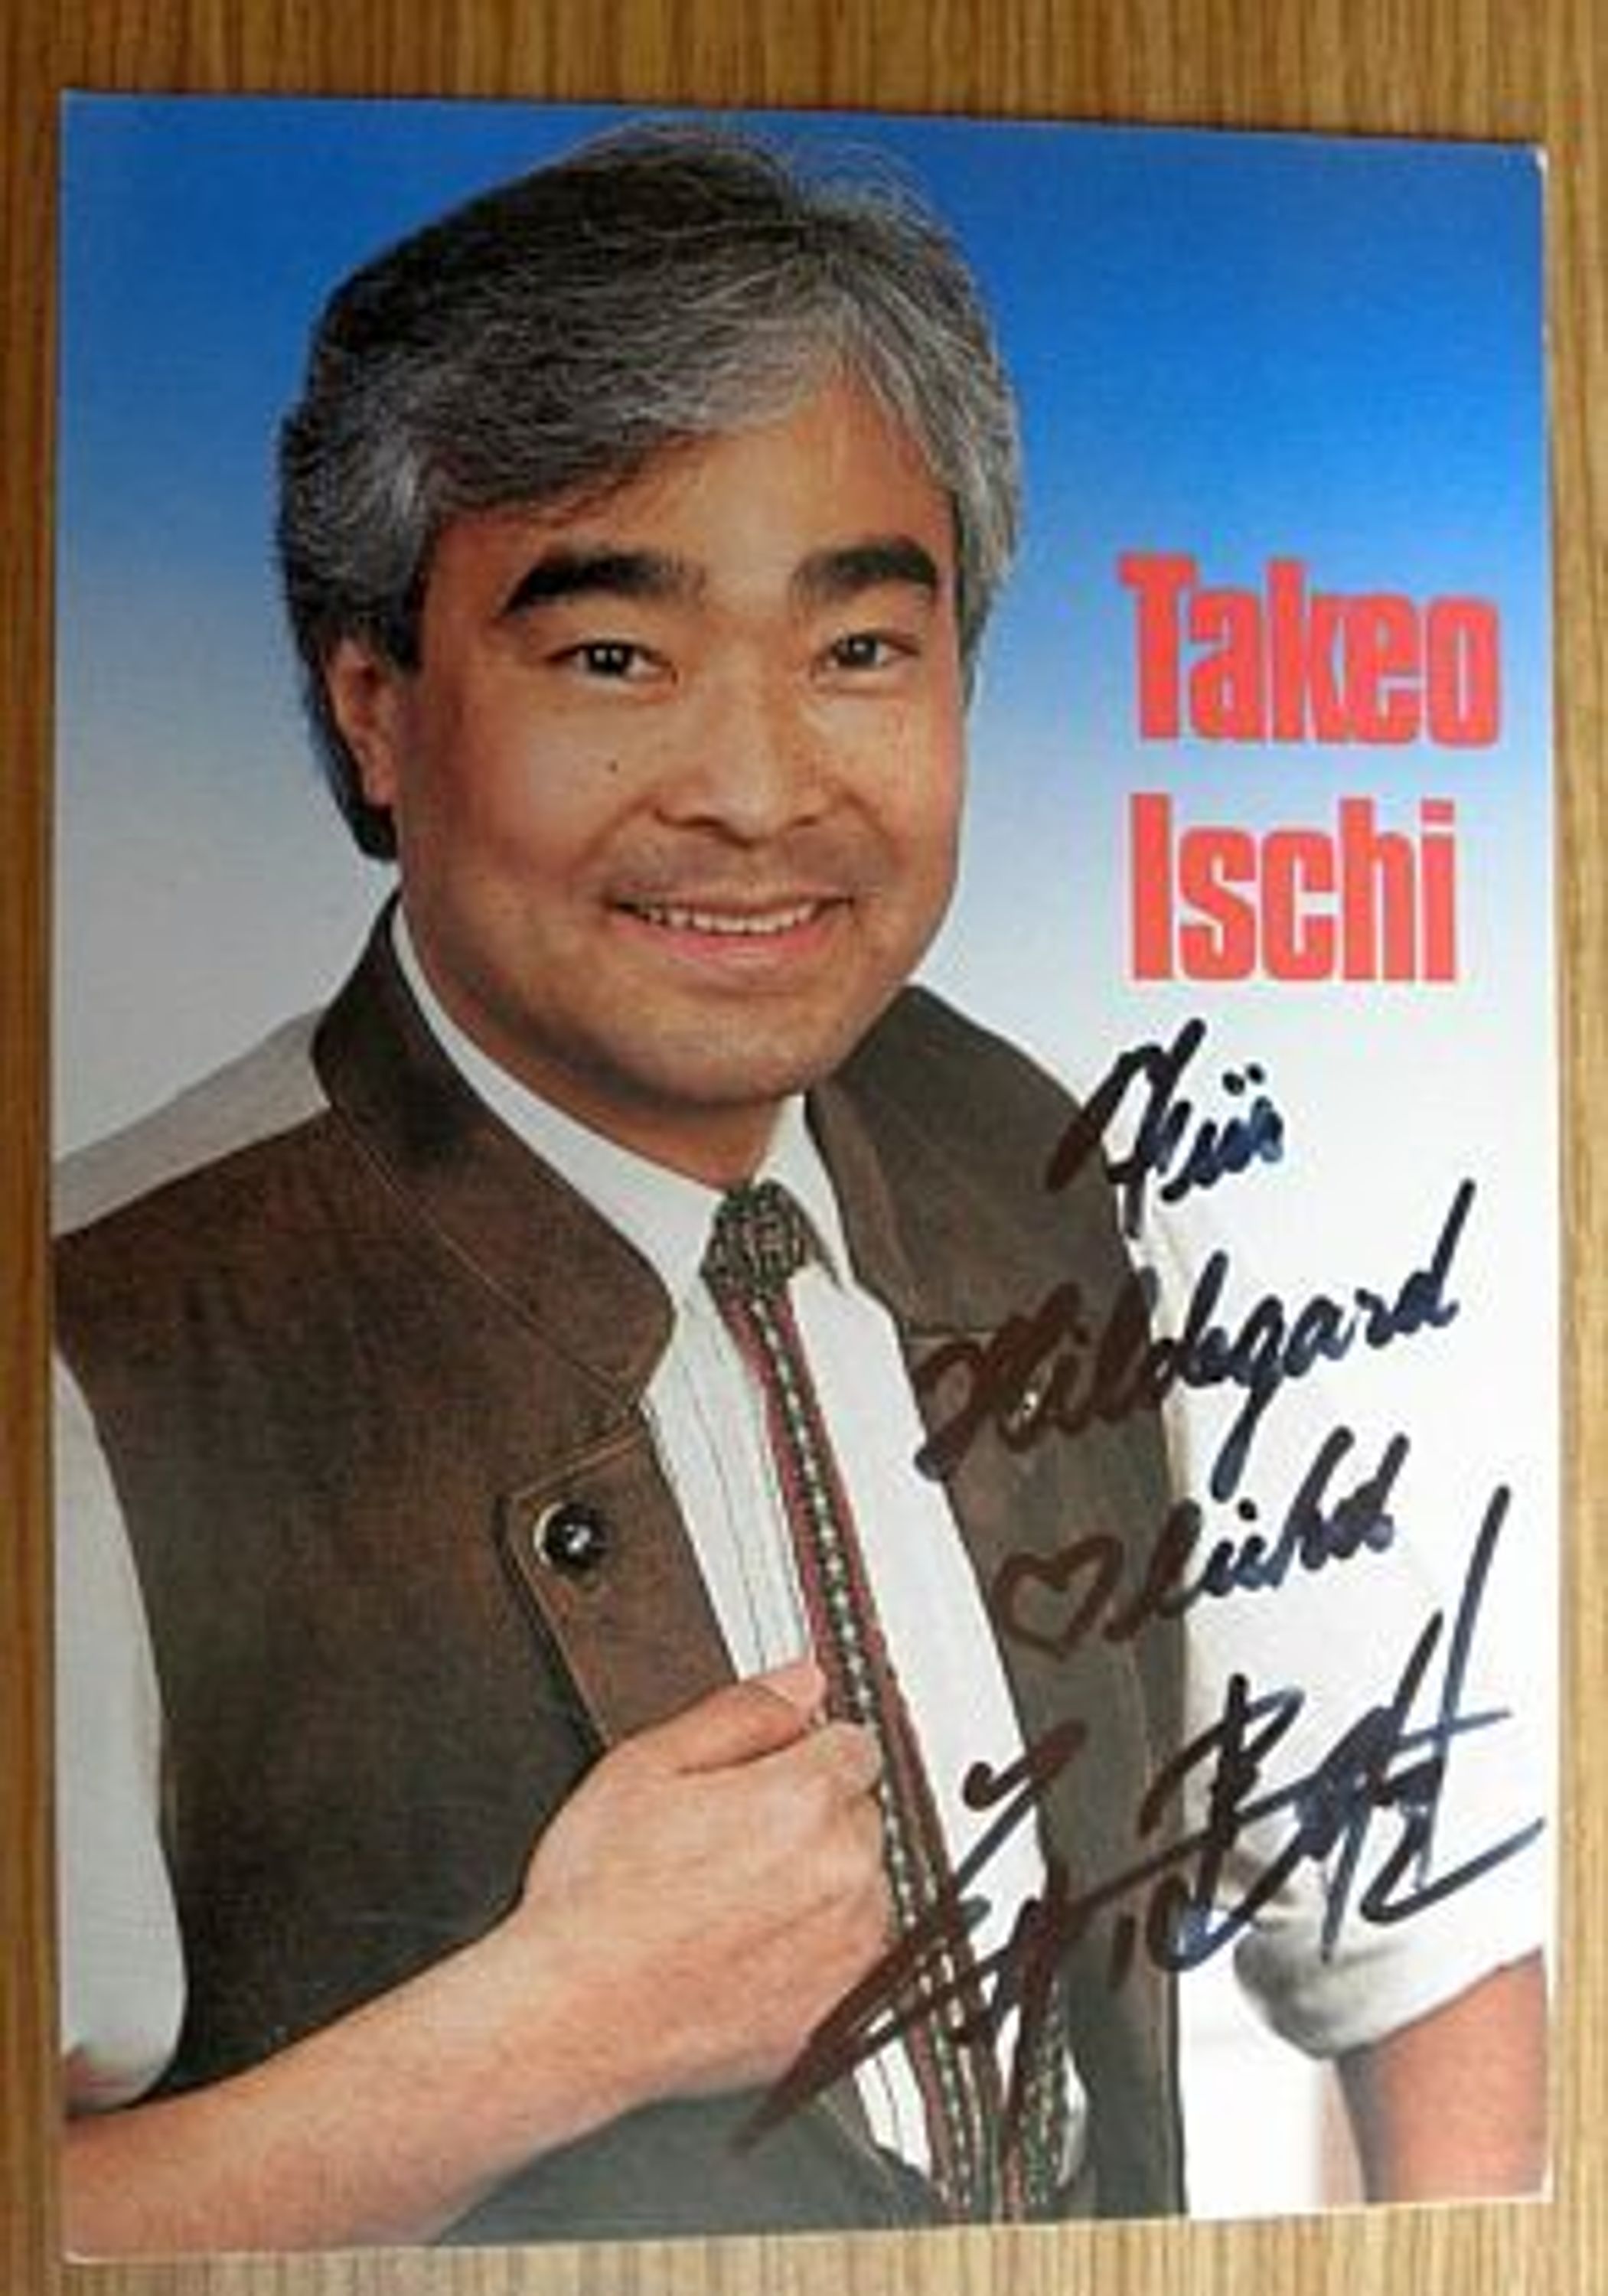 Takeo Ischi - mit Widmung - Originalautogramm aus Privatsammlung -al- kaufen ...